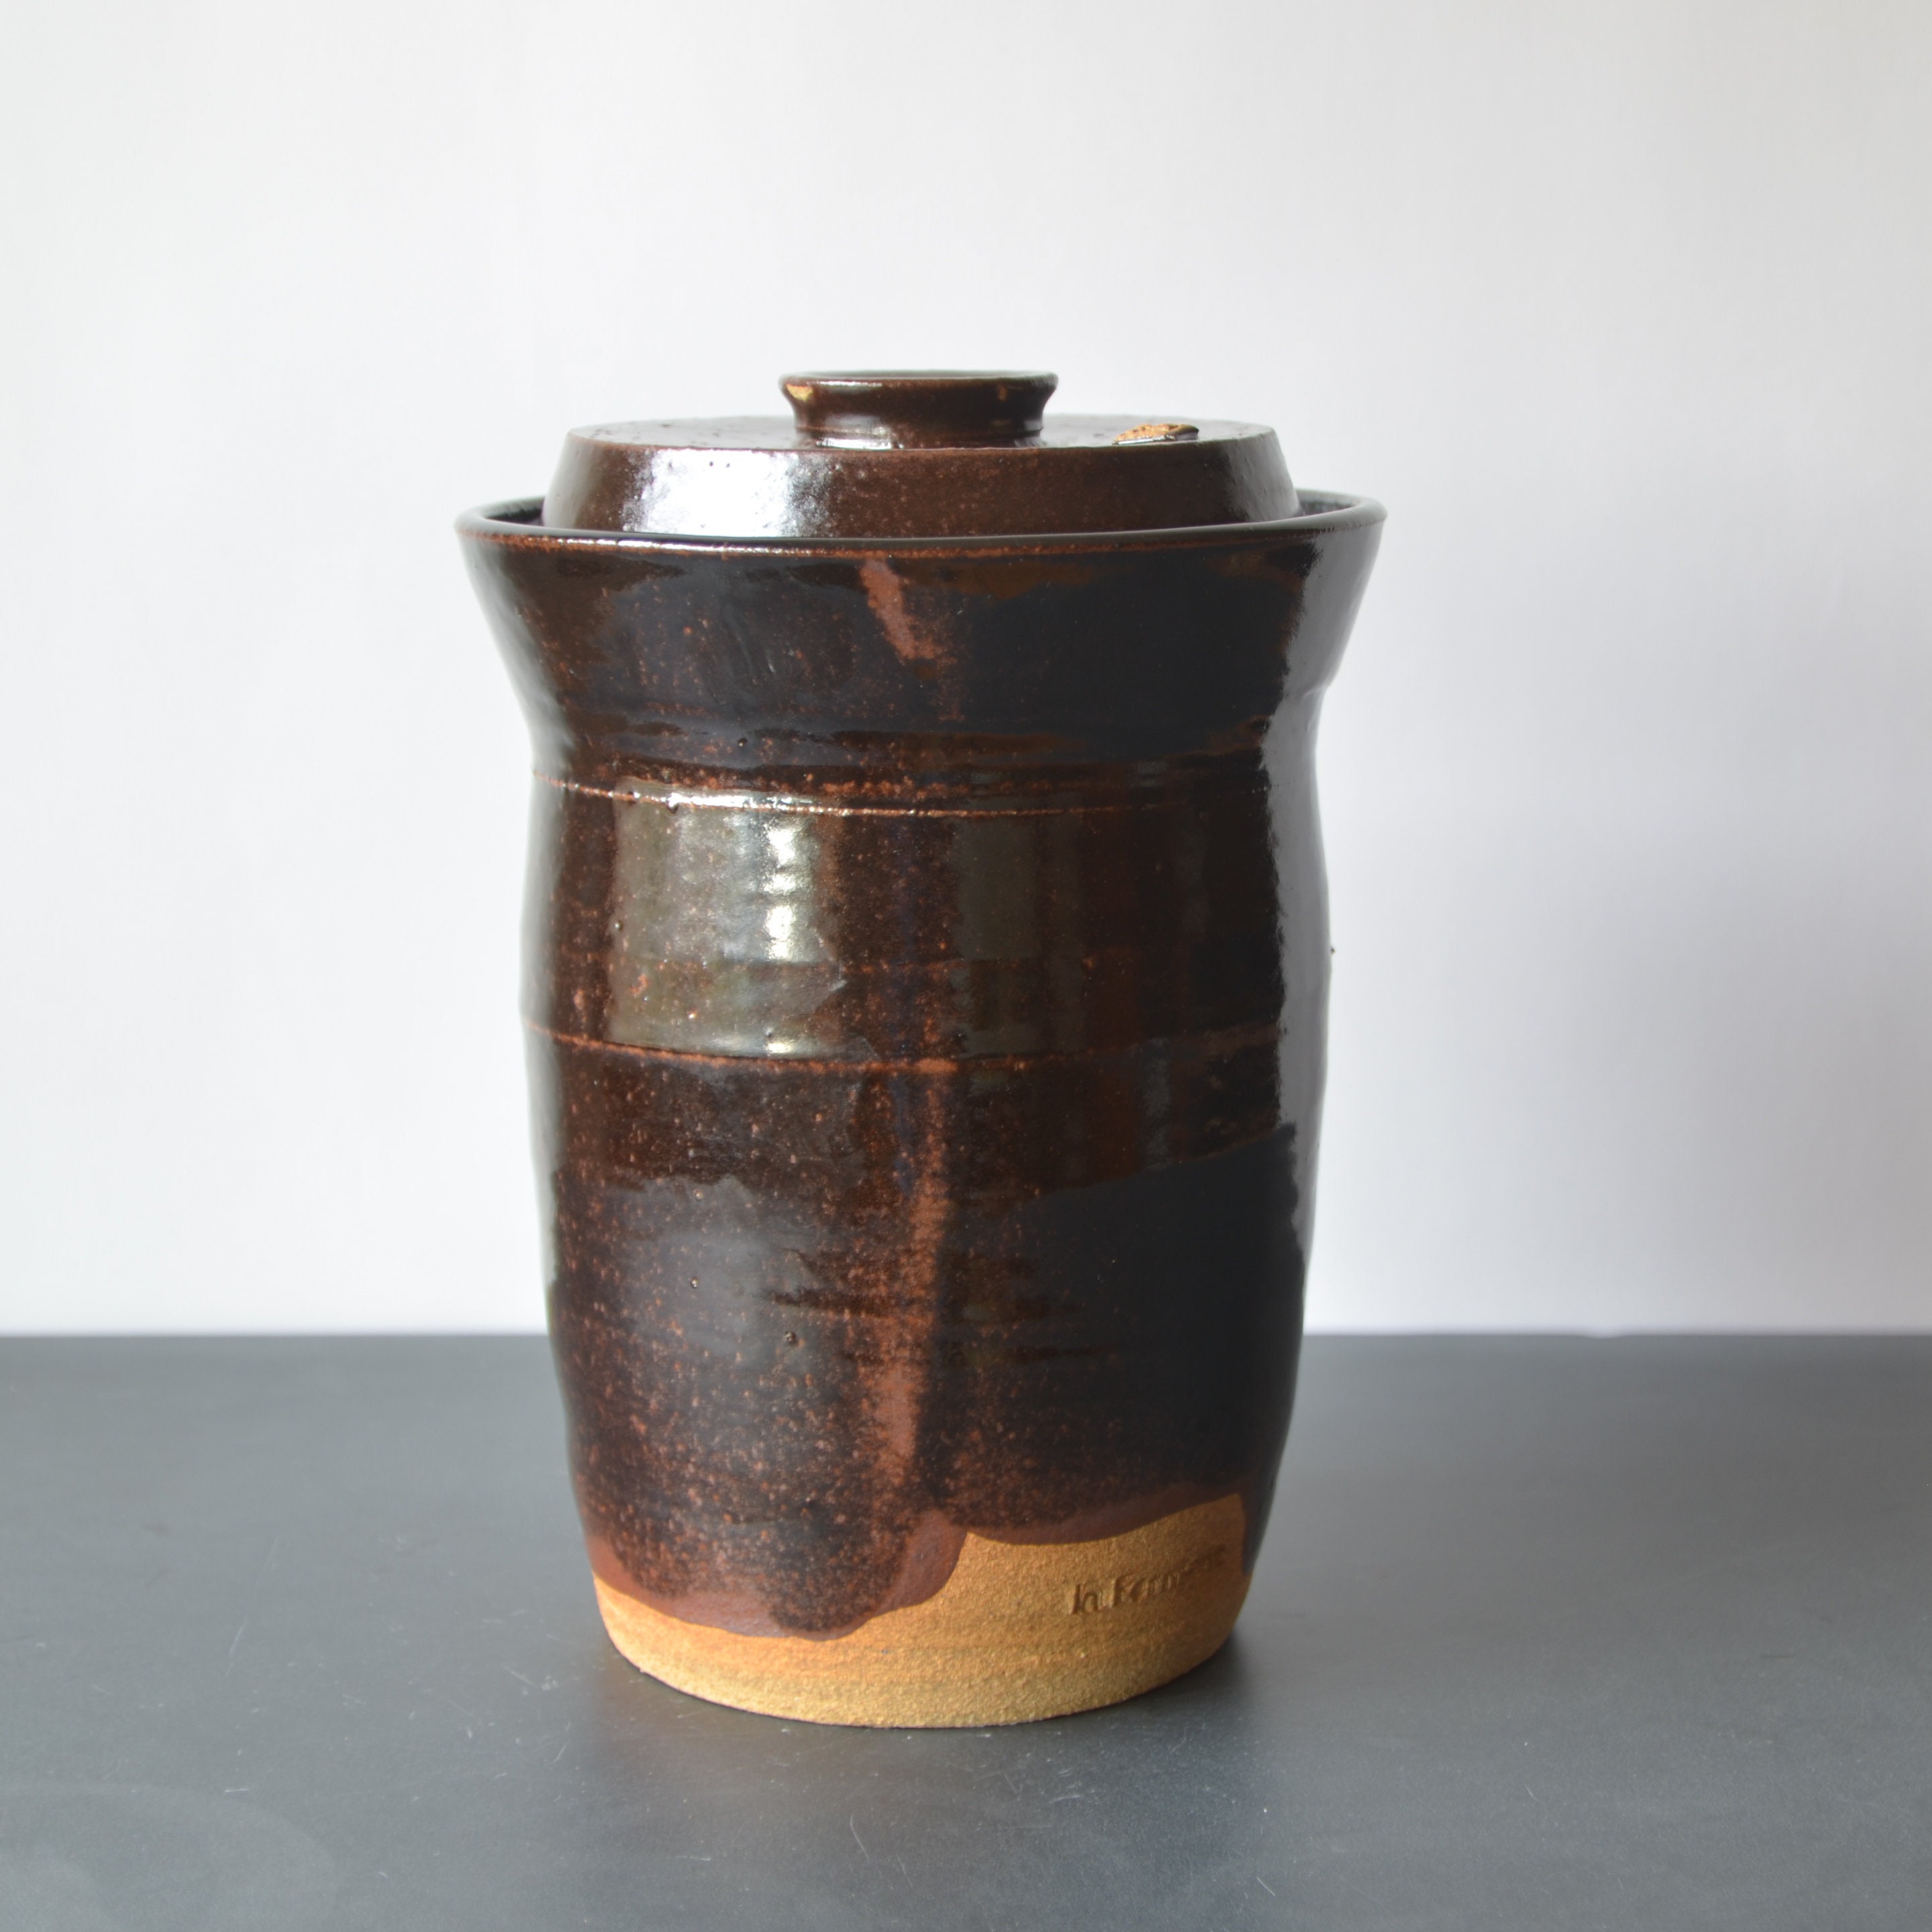 Handmade Ceramic Teapot Set - Moss Glaze - InFerment